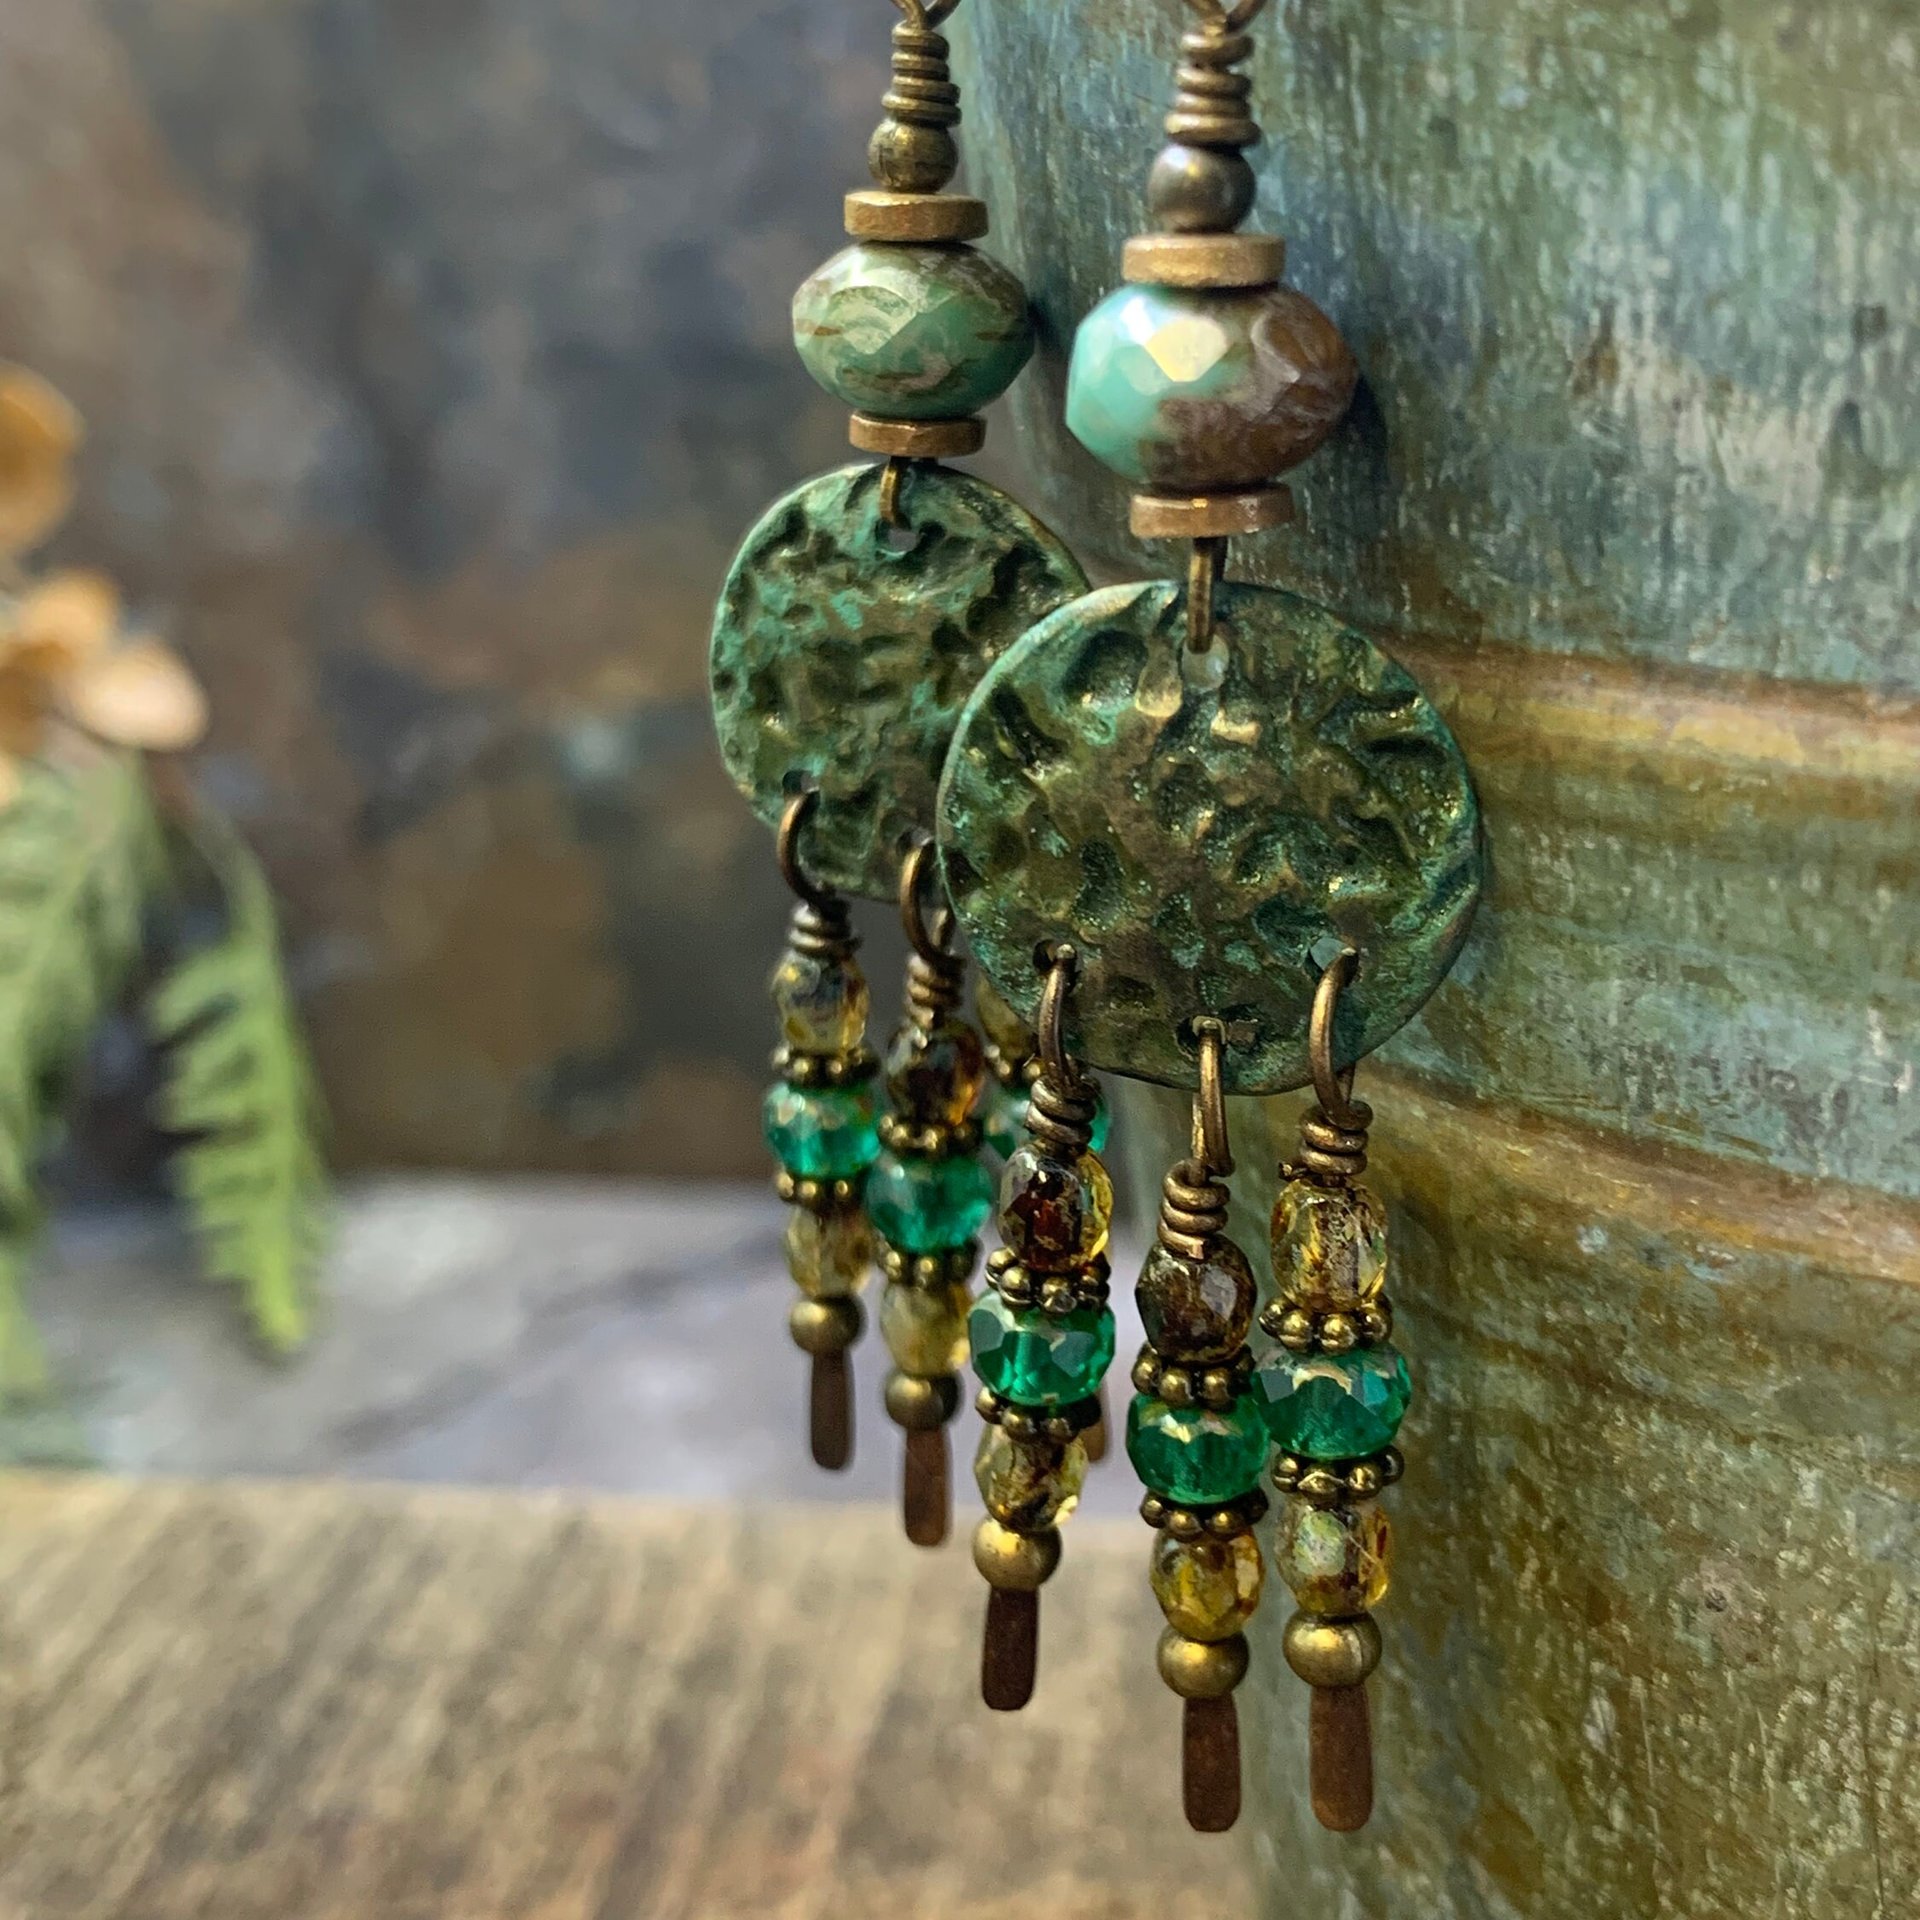 Bronze Disc Earrings, Chandelier Dangles, Czech Glass Beads, Boho Chic Jewelry, Hypoallergenic Ear Wires, Earthy Colorful